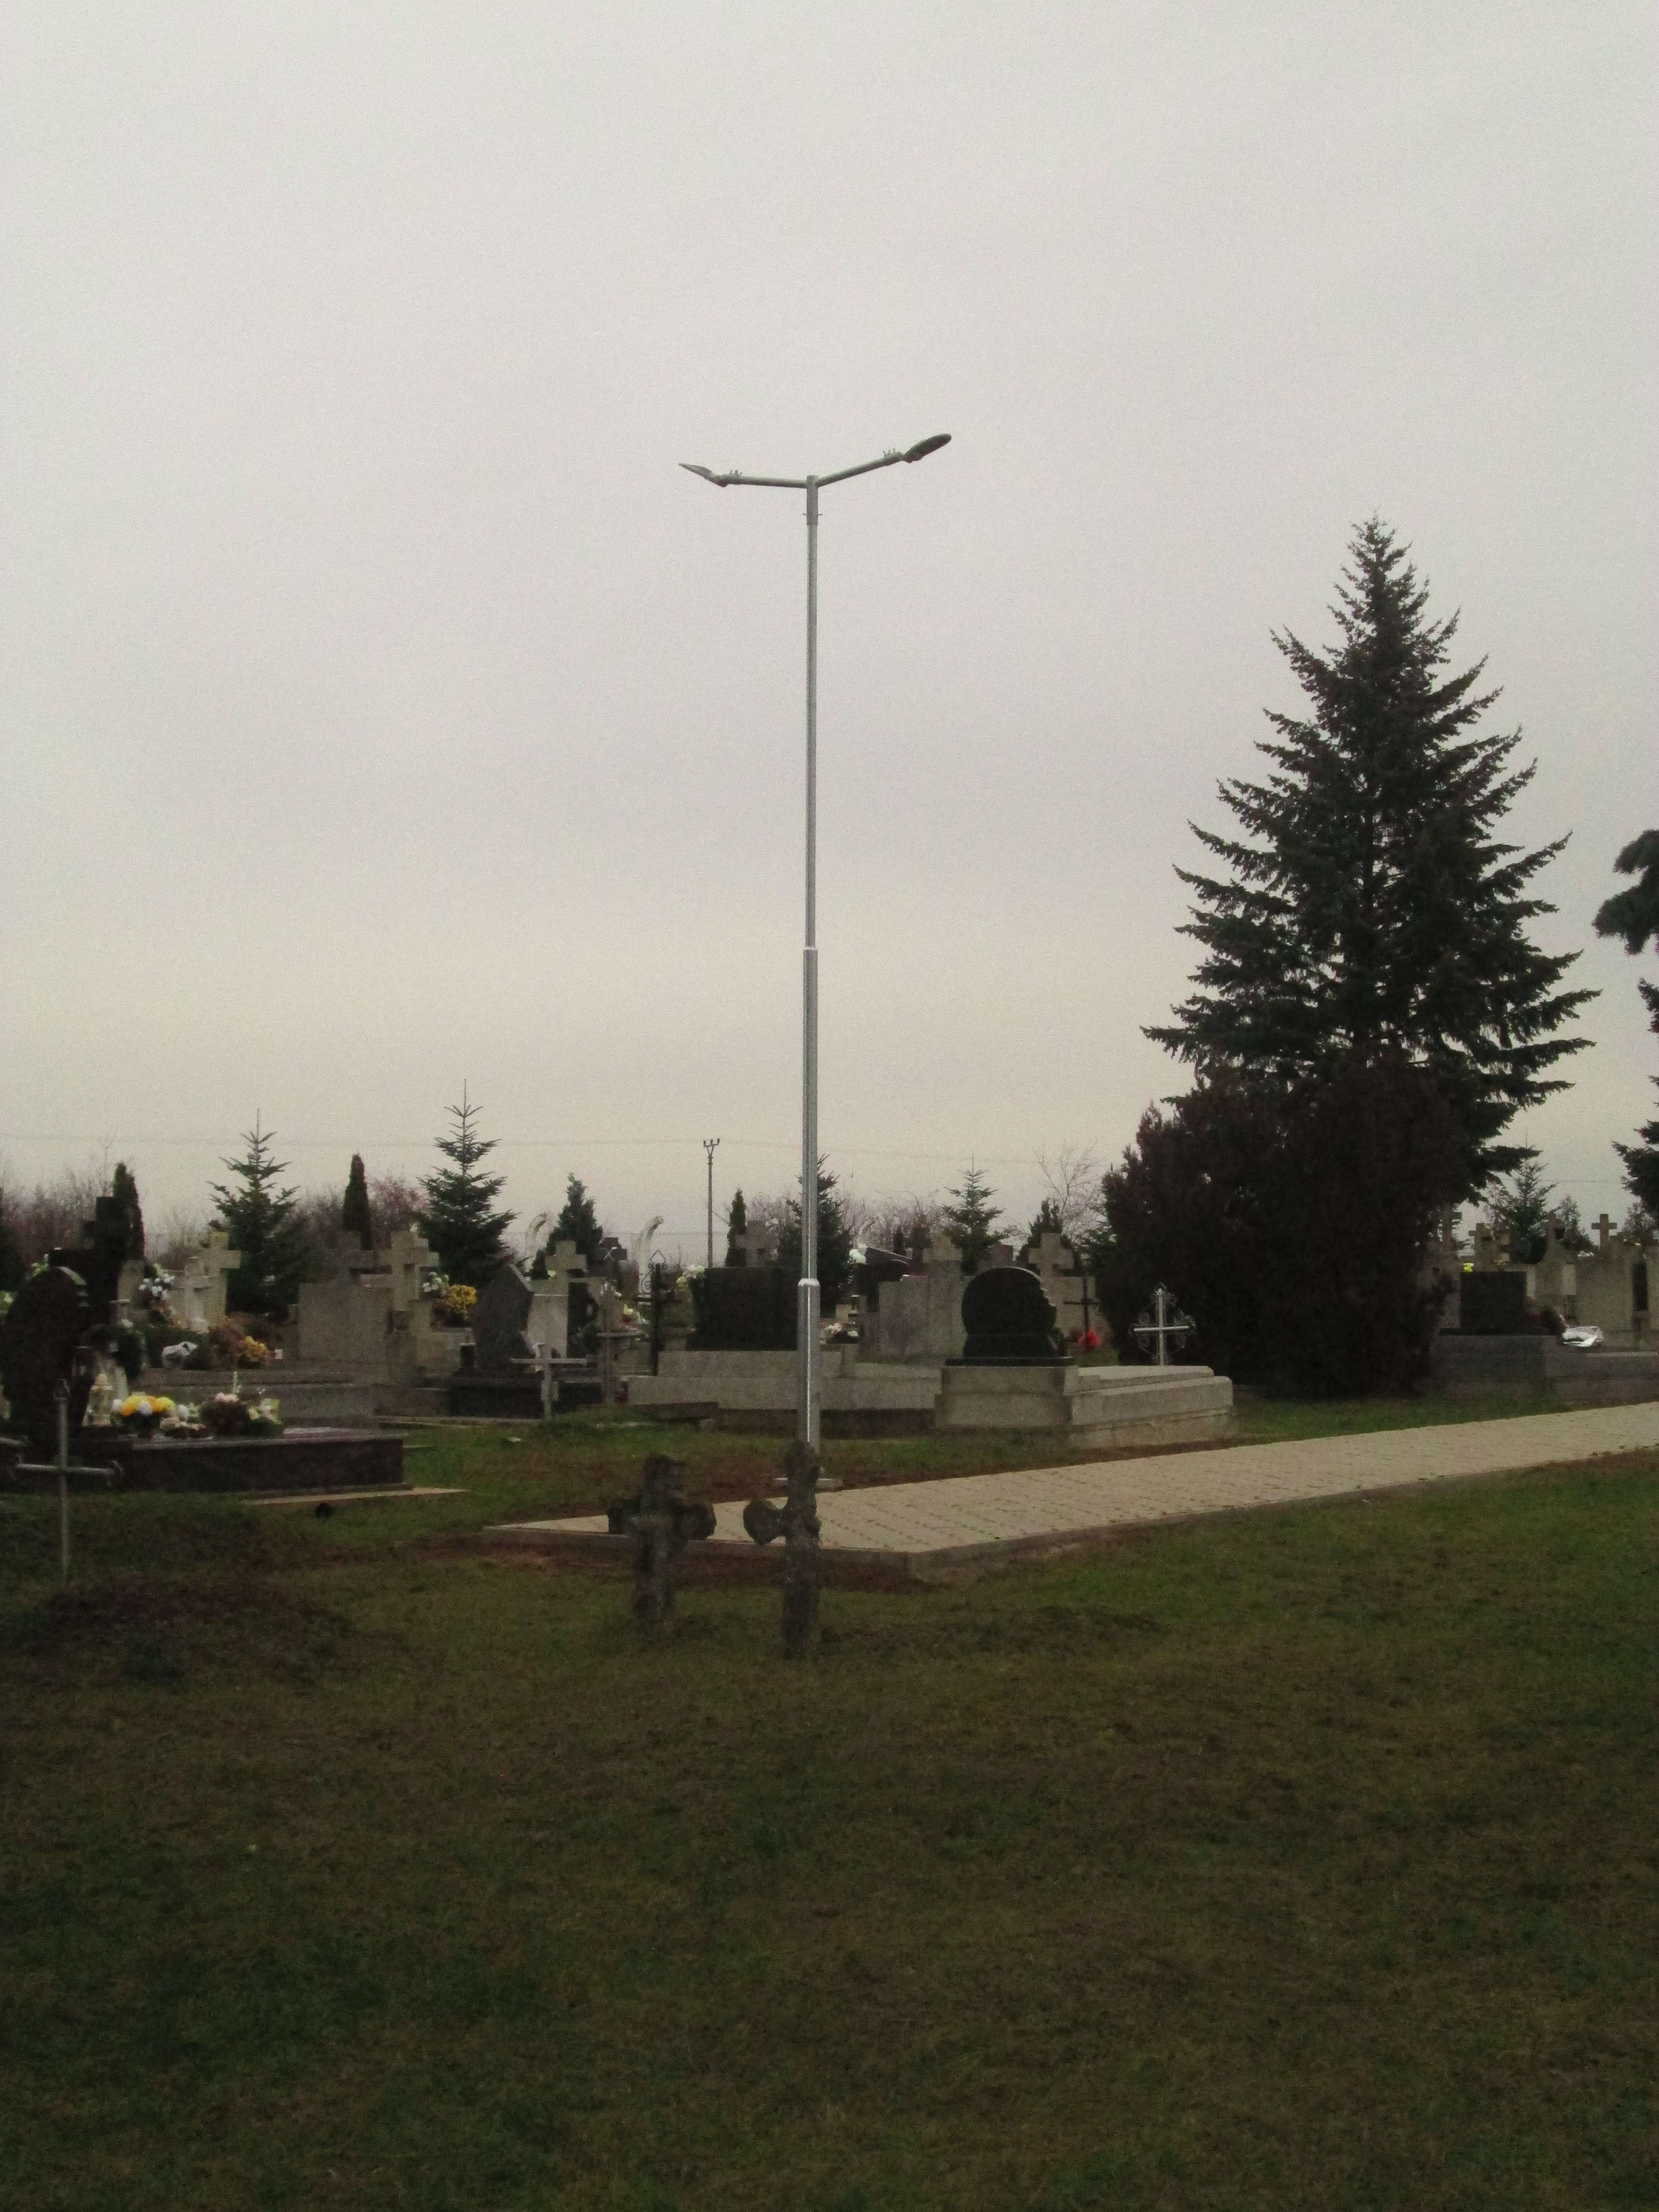 Sviatok Všetkých svätých s novým verejným osvetlením cintorína